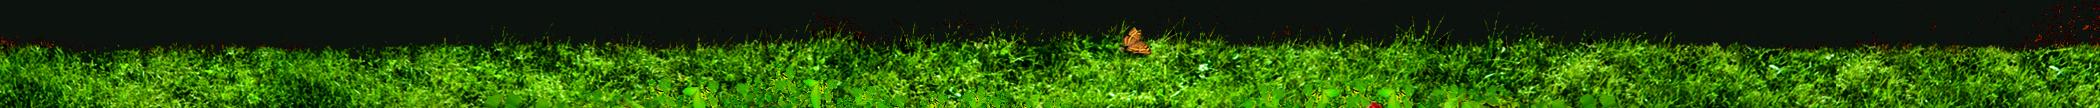 La crassule est une jolie plante grasse au port arbustif et facile de culture